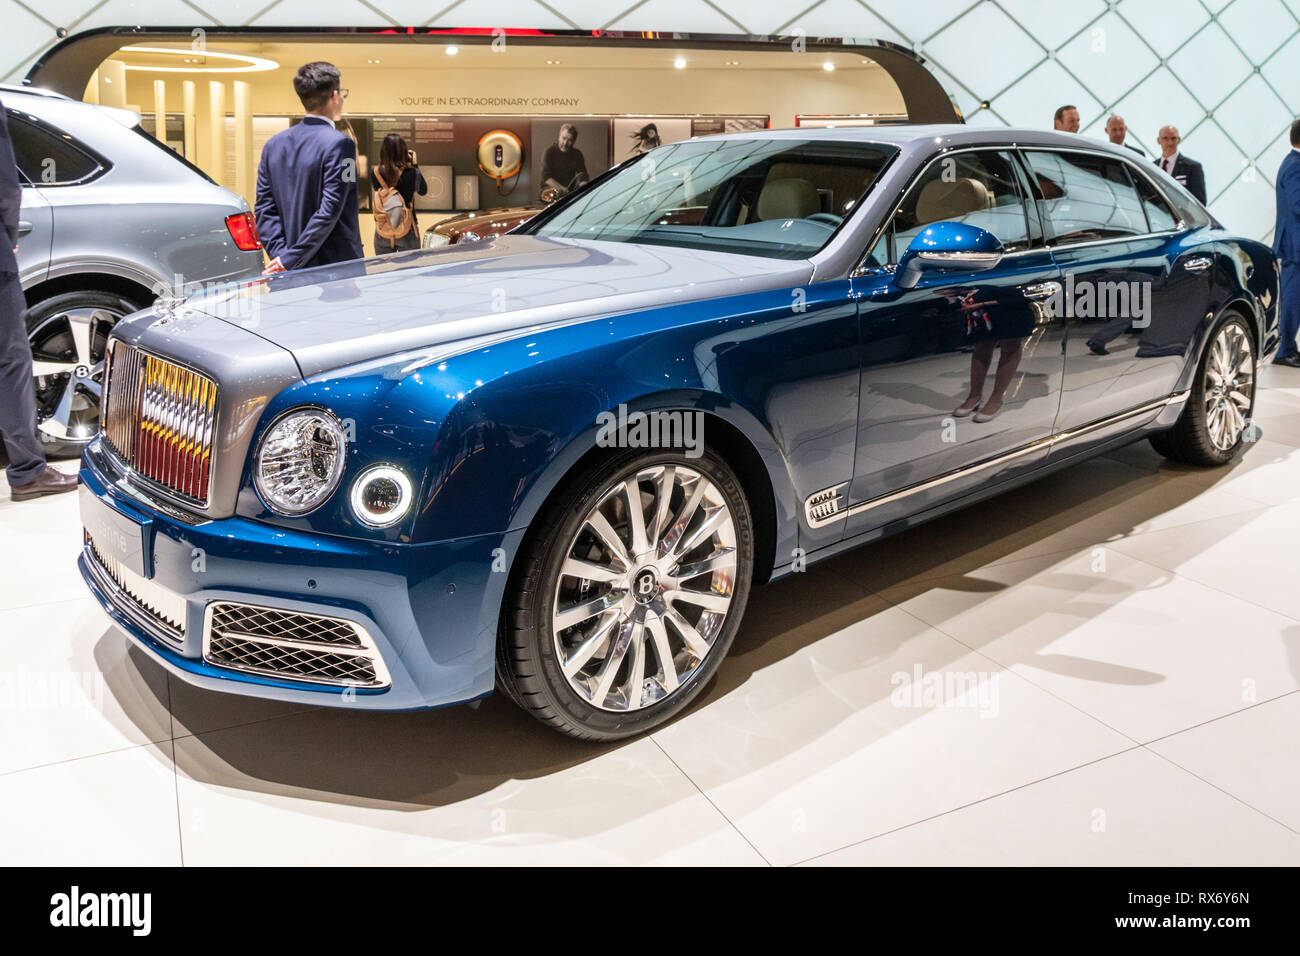 Genf, Schweiz - 6. MÄRZ 2018: Bentley Mulsanne luxus Auto auf dem 88. Internationalen Automobilsalon in Genf präsentiert. Stockfoto